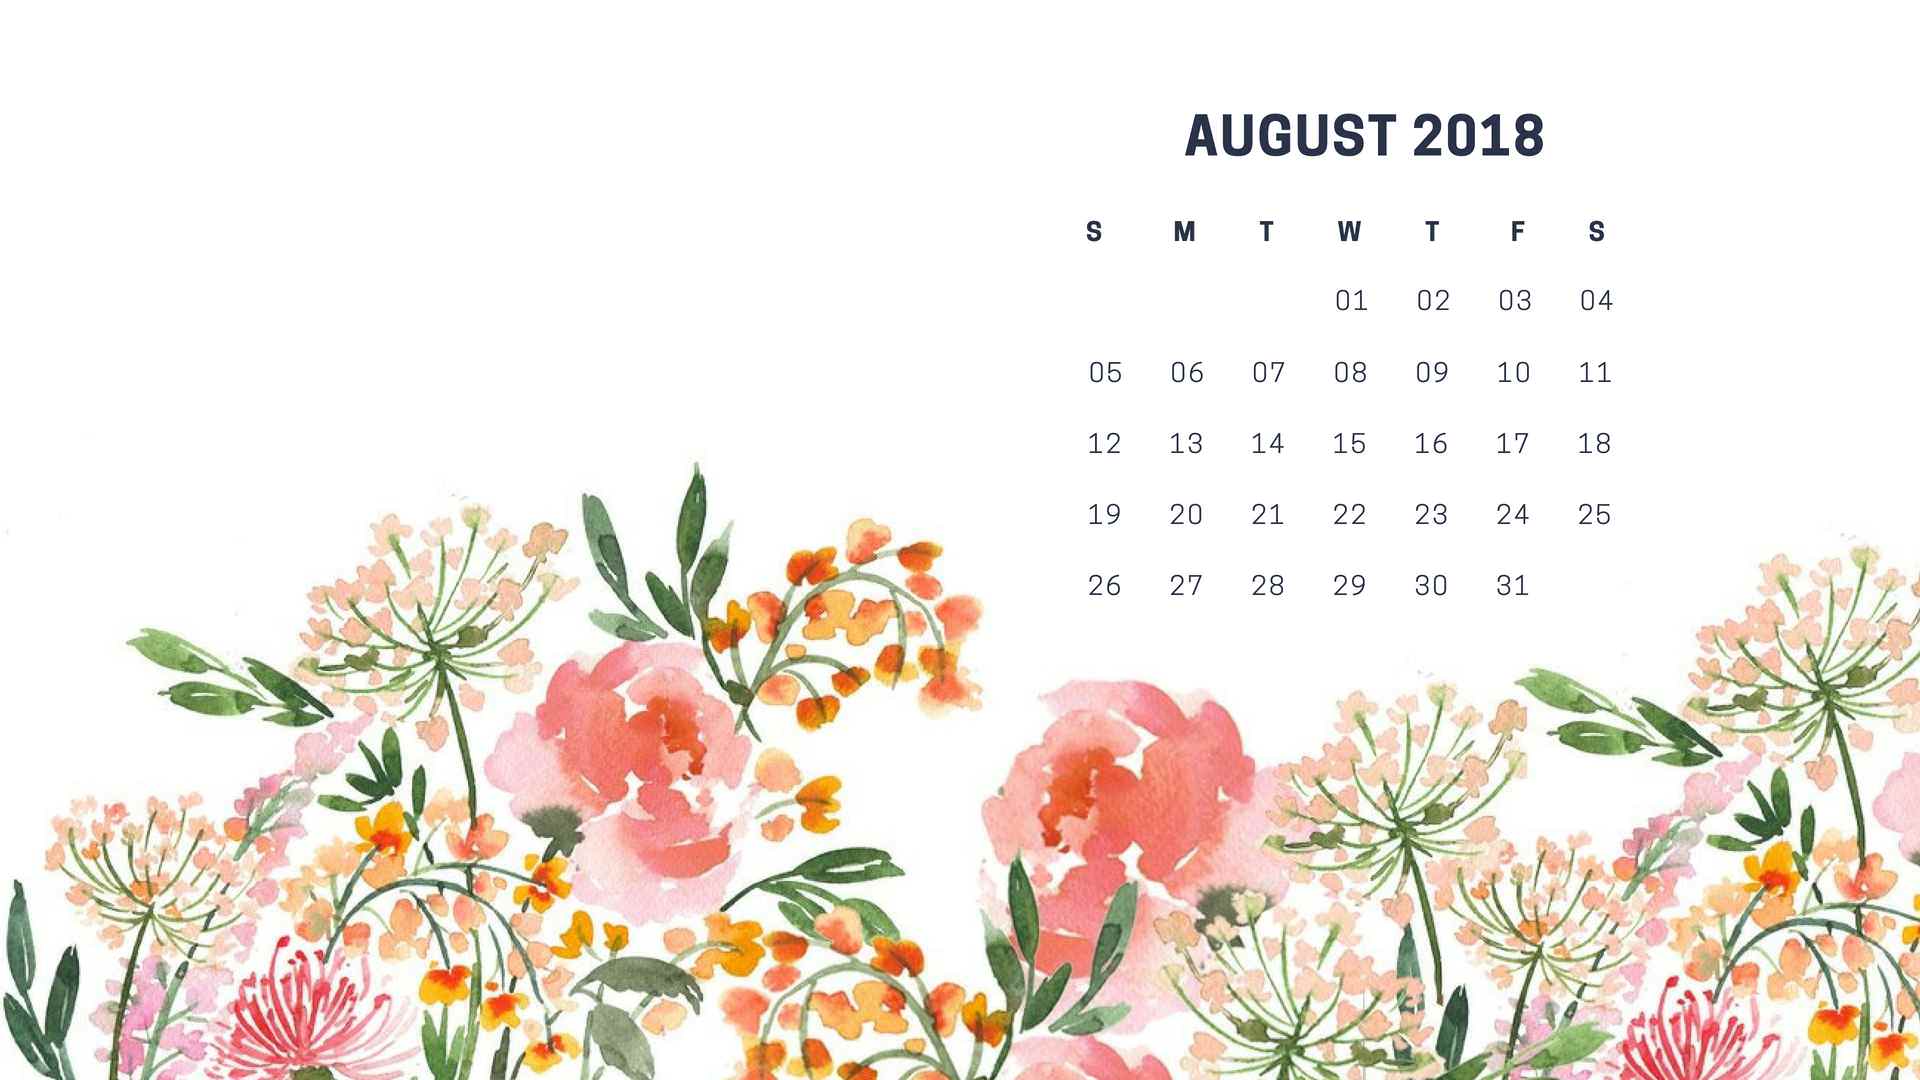 August 2018 Calendar Wallpapers Wallpaper Cave